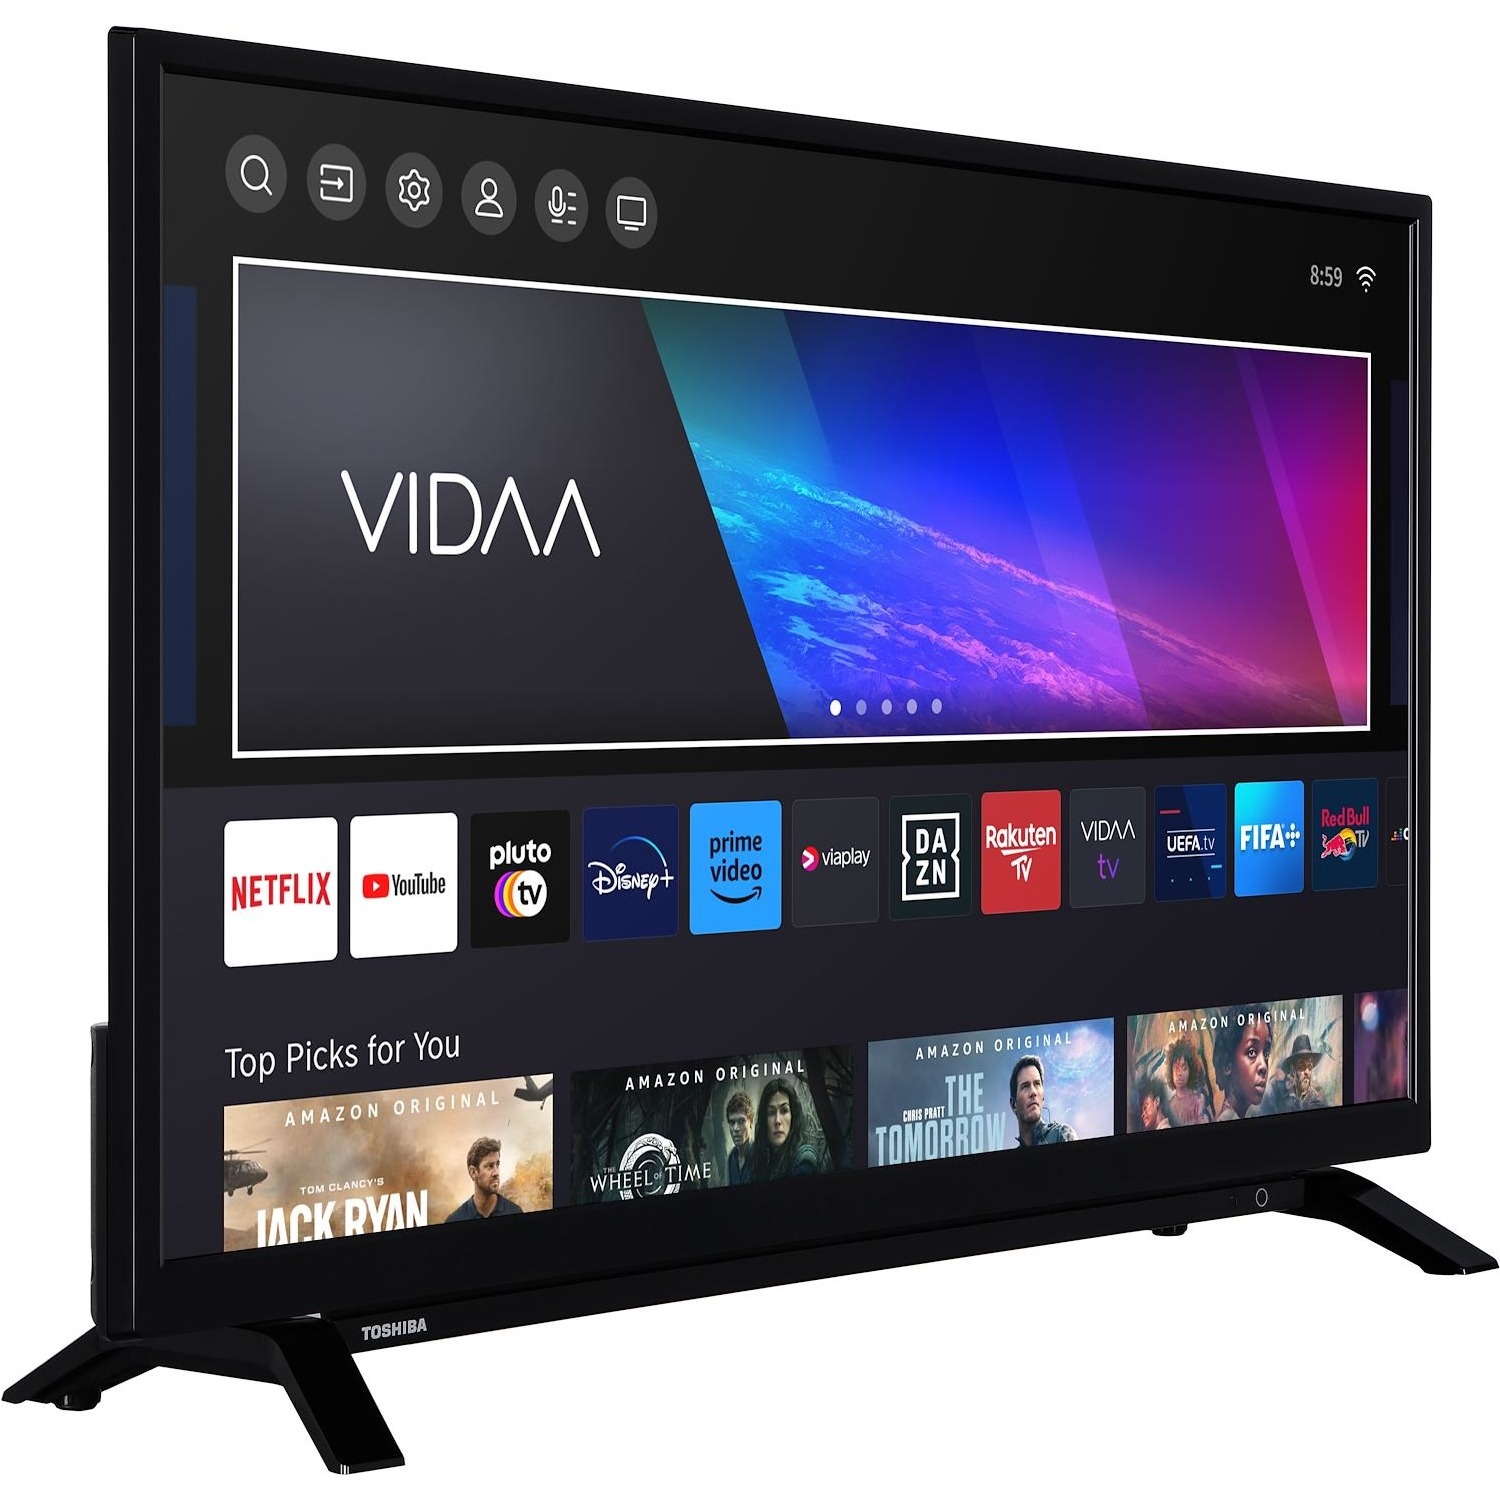 Immagine per TV LED Smart Toshiba Vidaa 32WV2363DA da DIMOStore